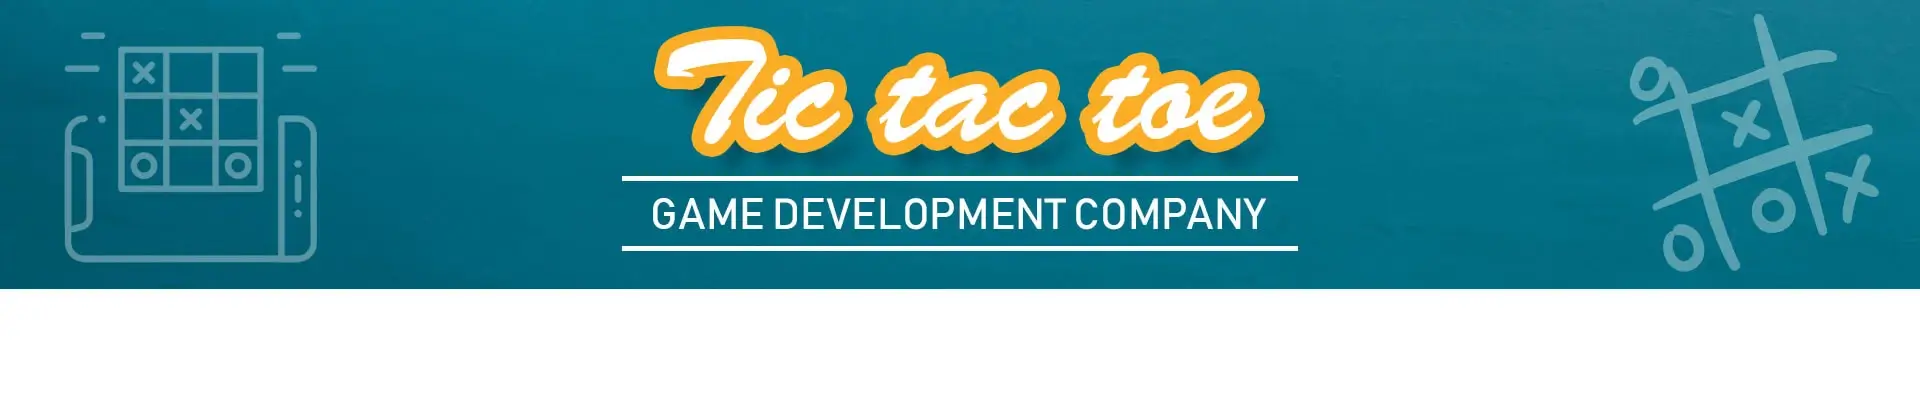 Tic Tac Toe Game Development Company